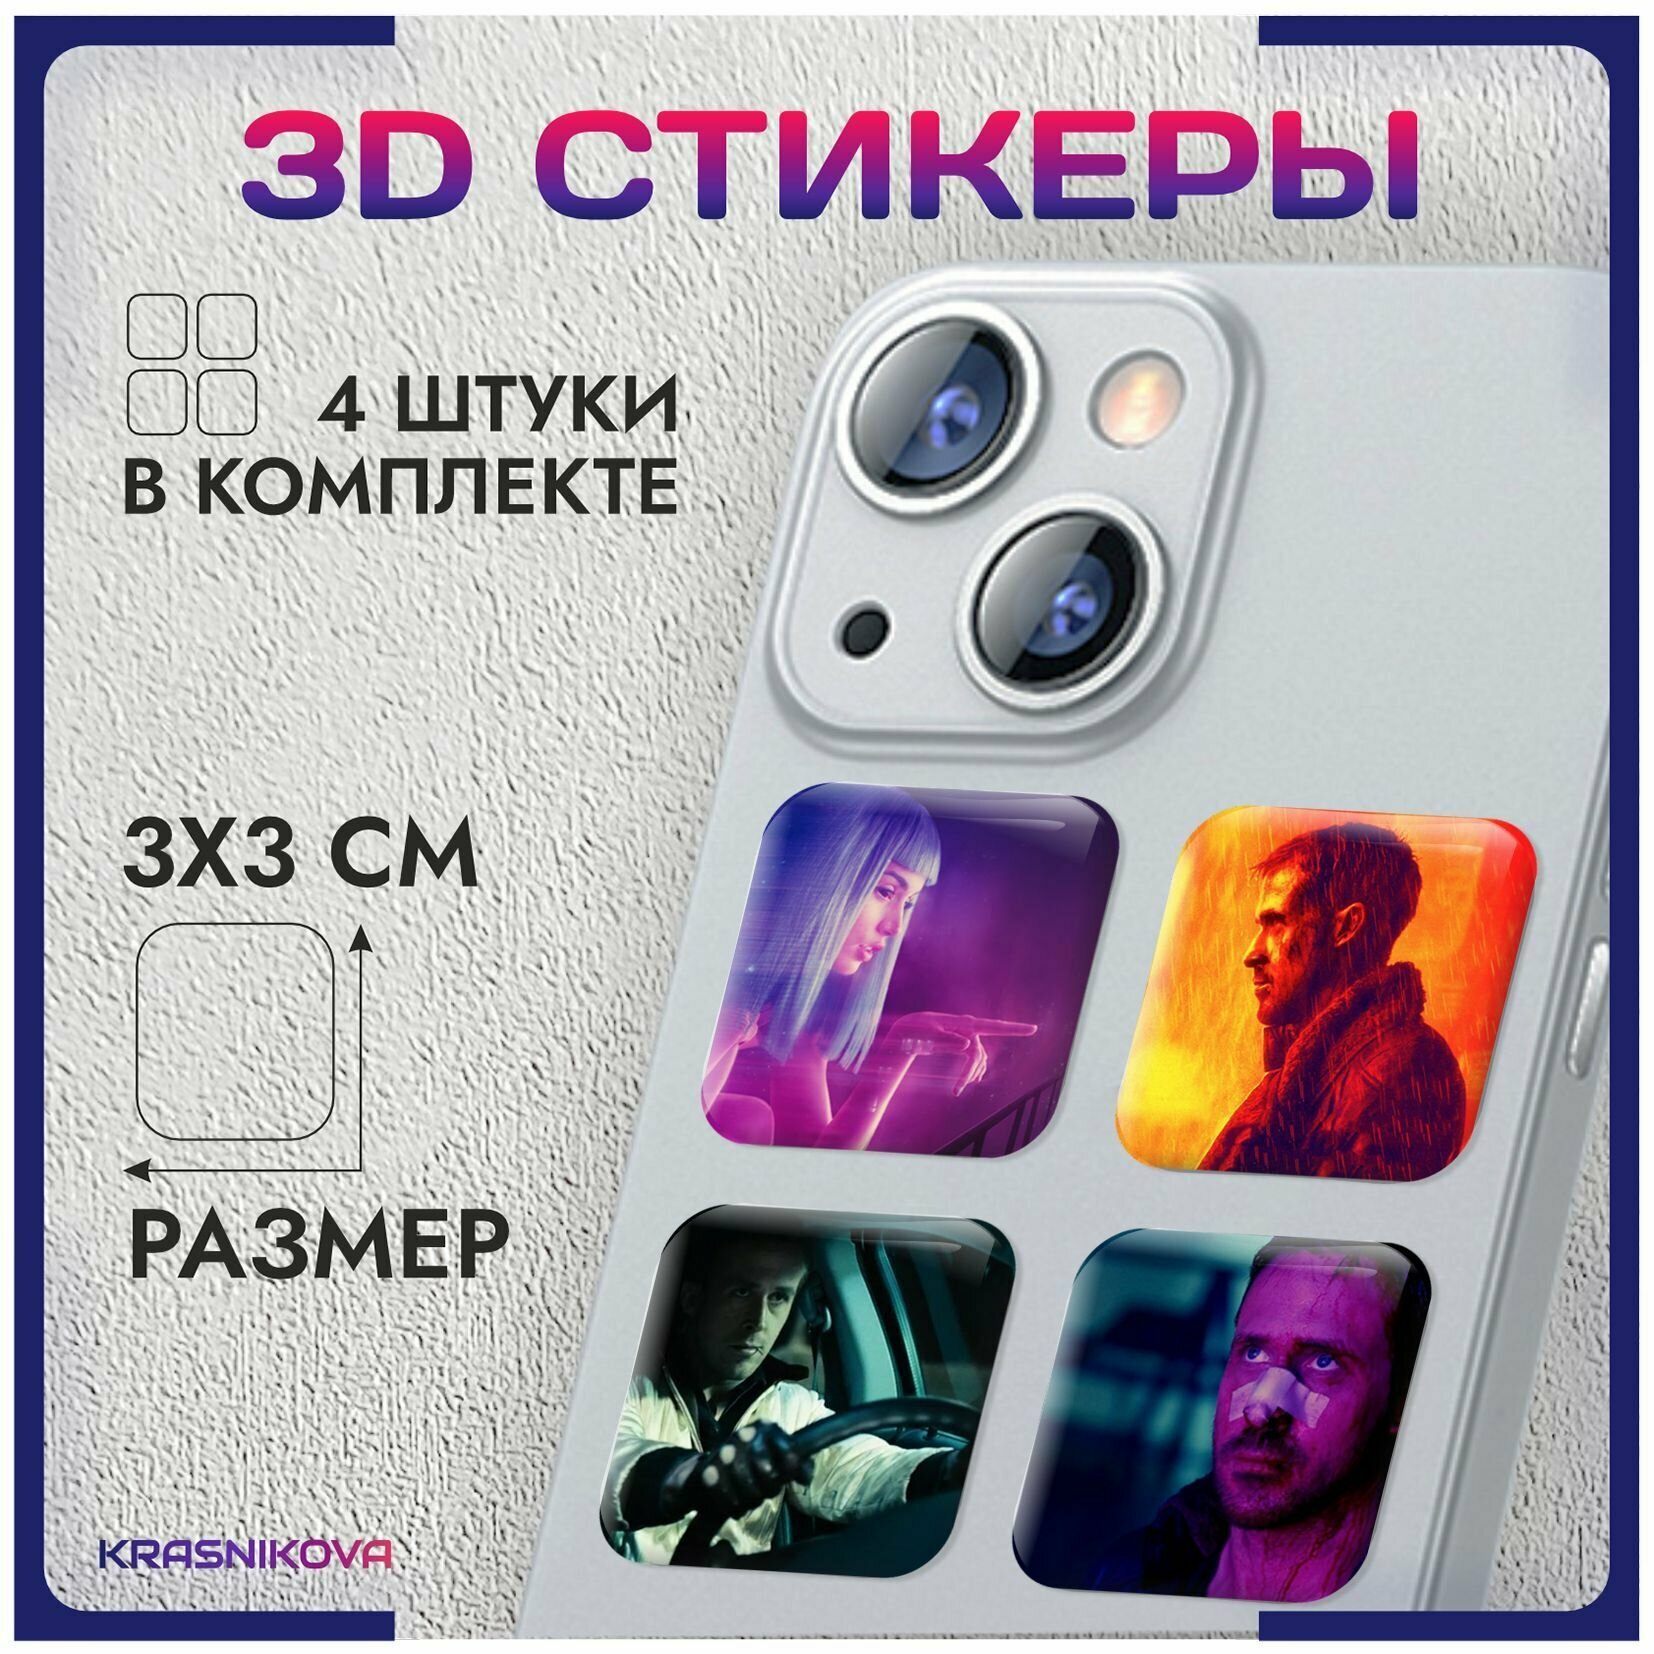 3D стикеры на телефон объемные наклейки Райан Гослинг арт